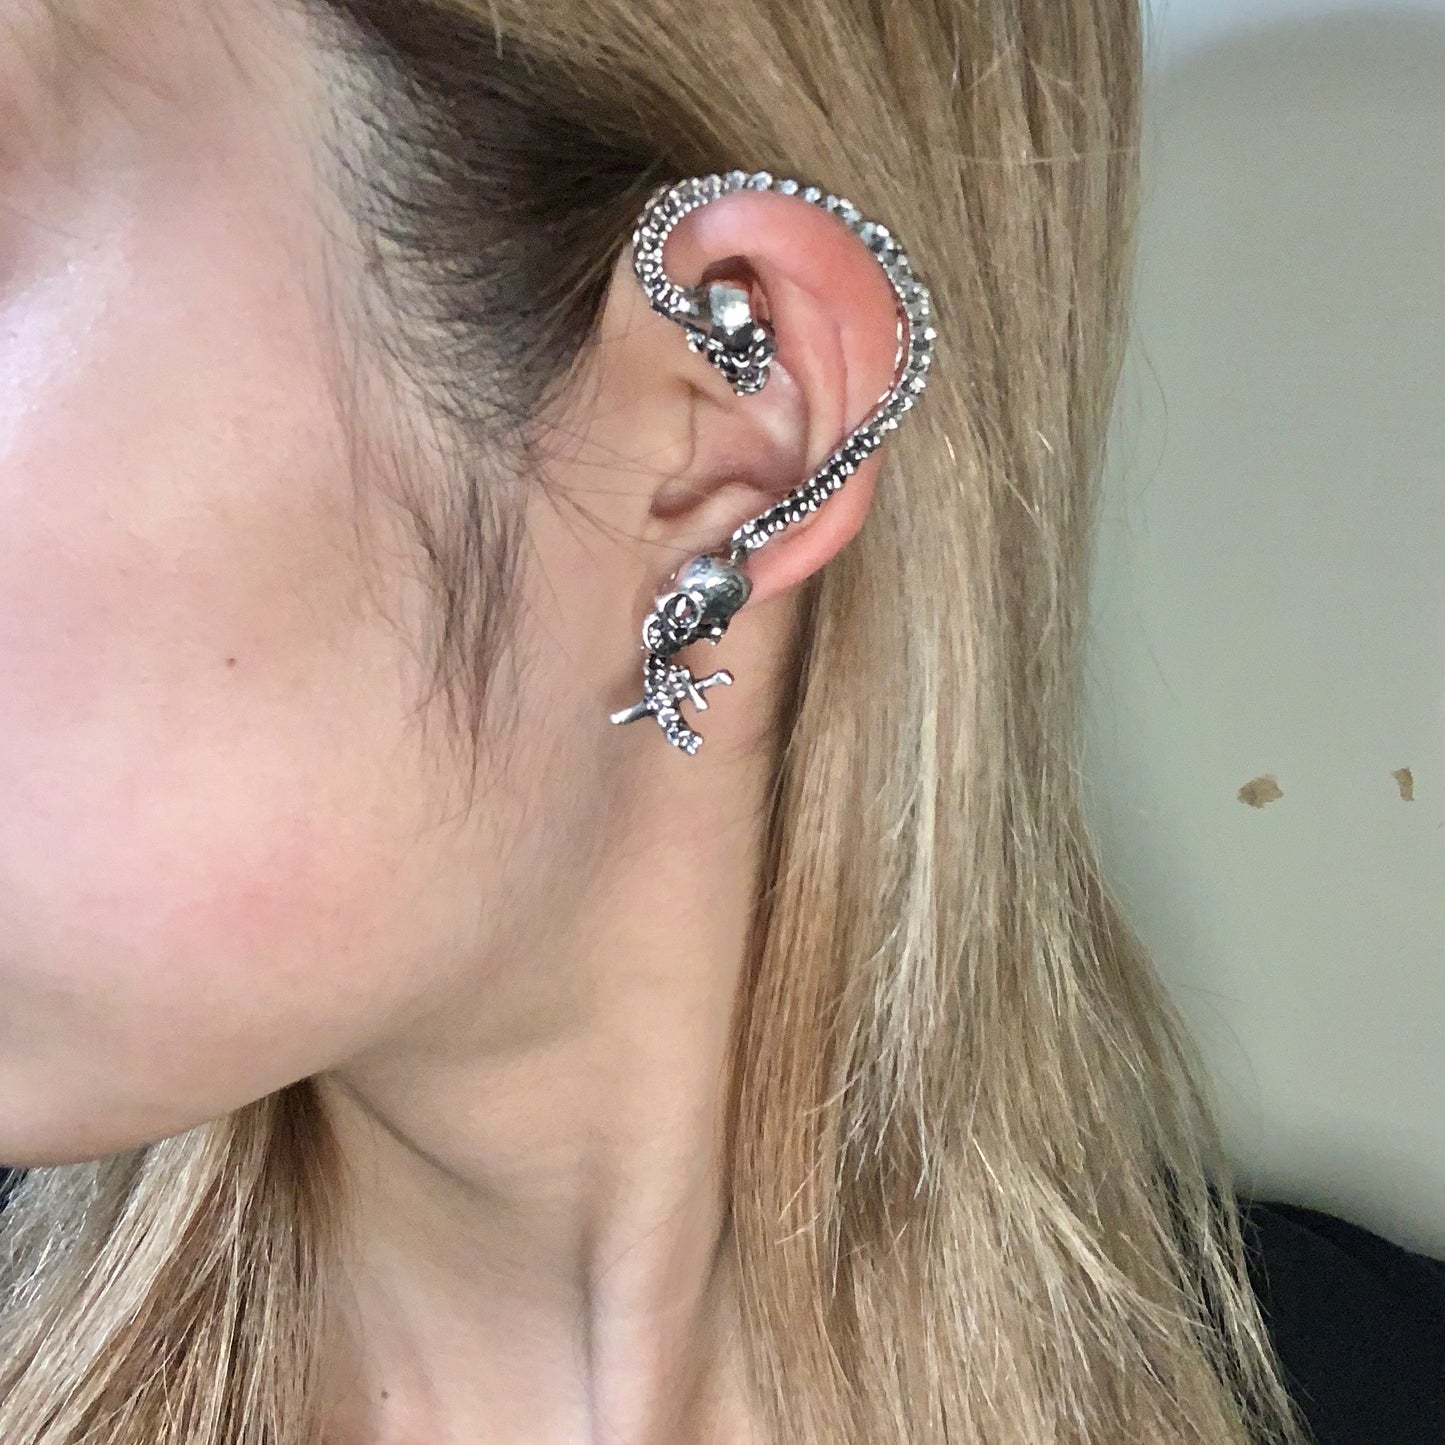 Skull earrings that go over the ears